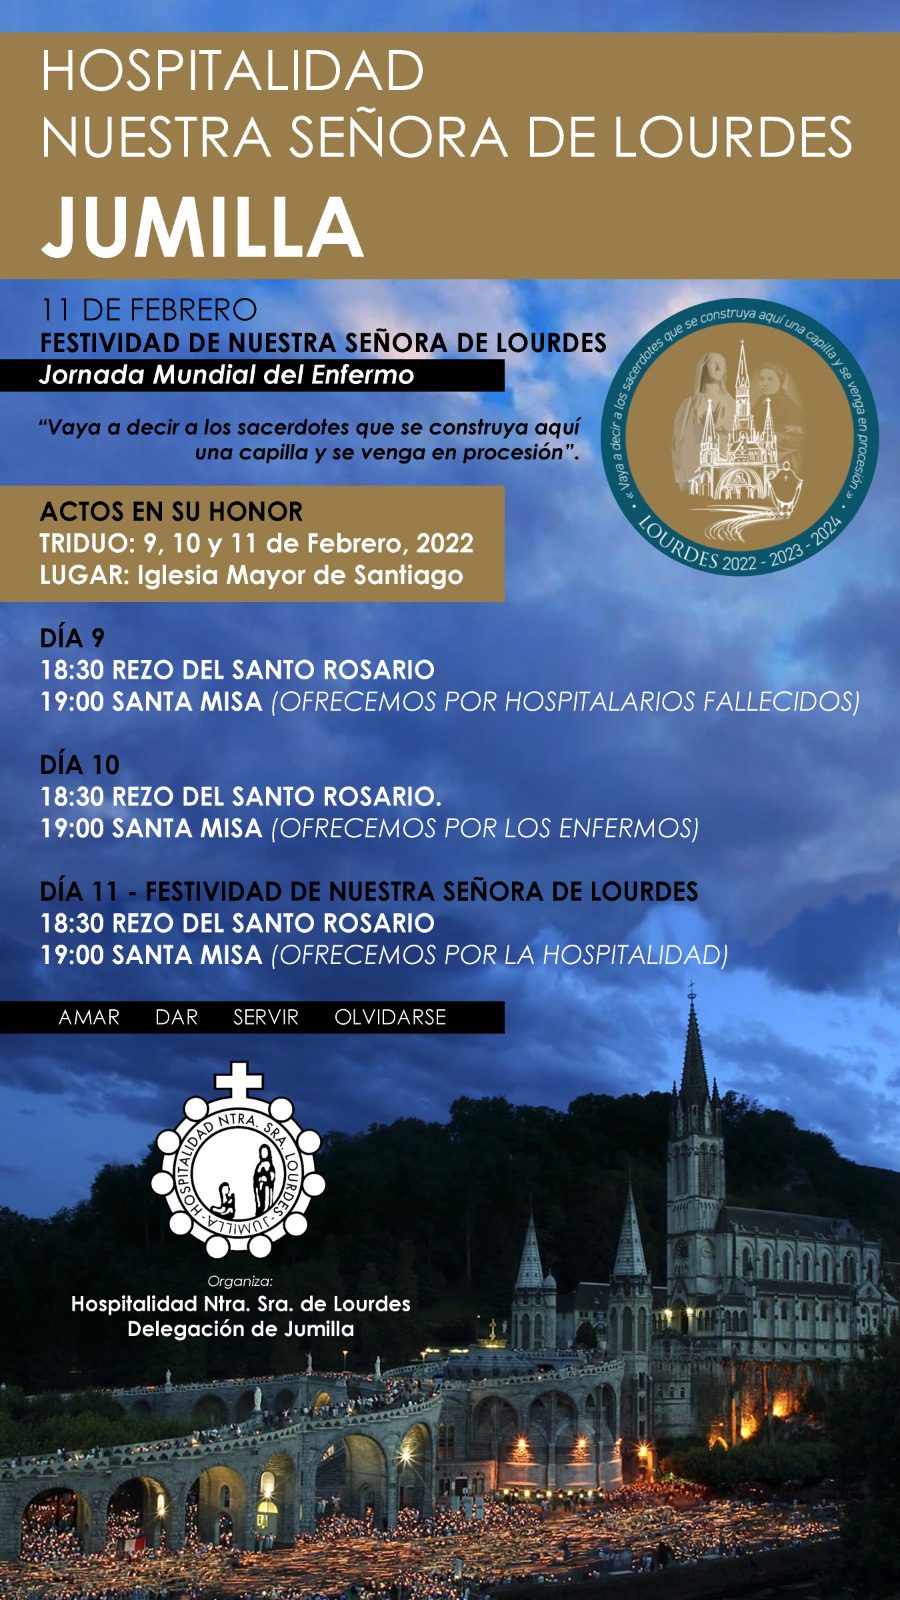 La Hospitalidad celebrará la festividad de Lourdes con un triduo en Santiago